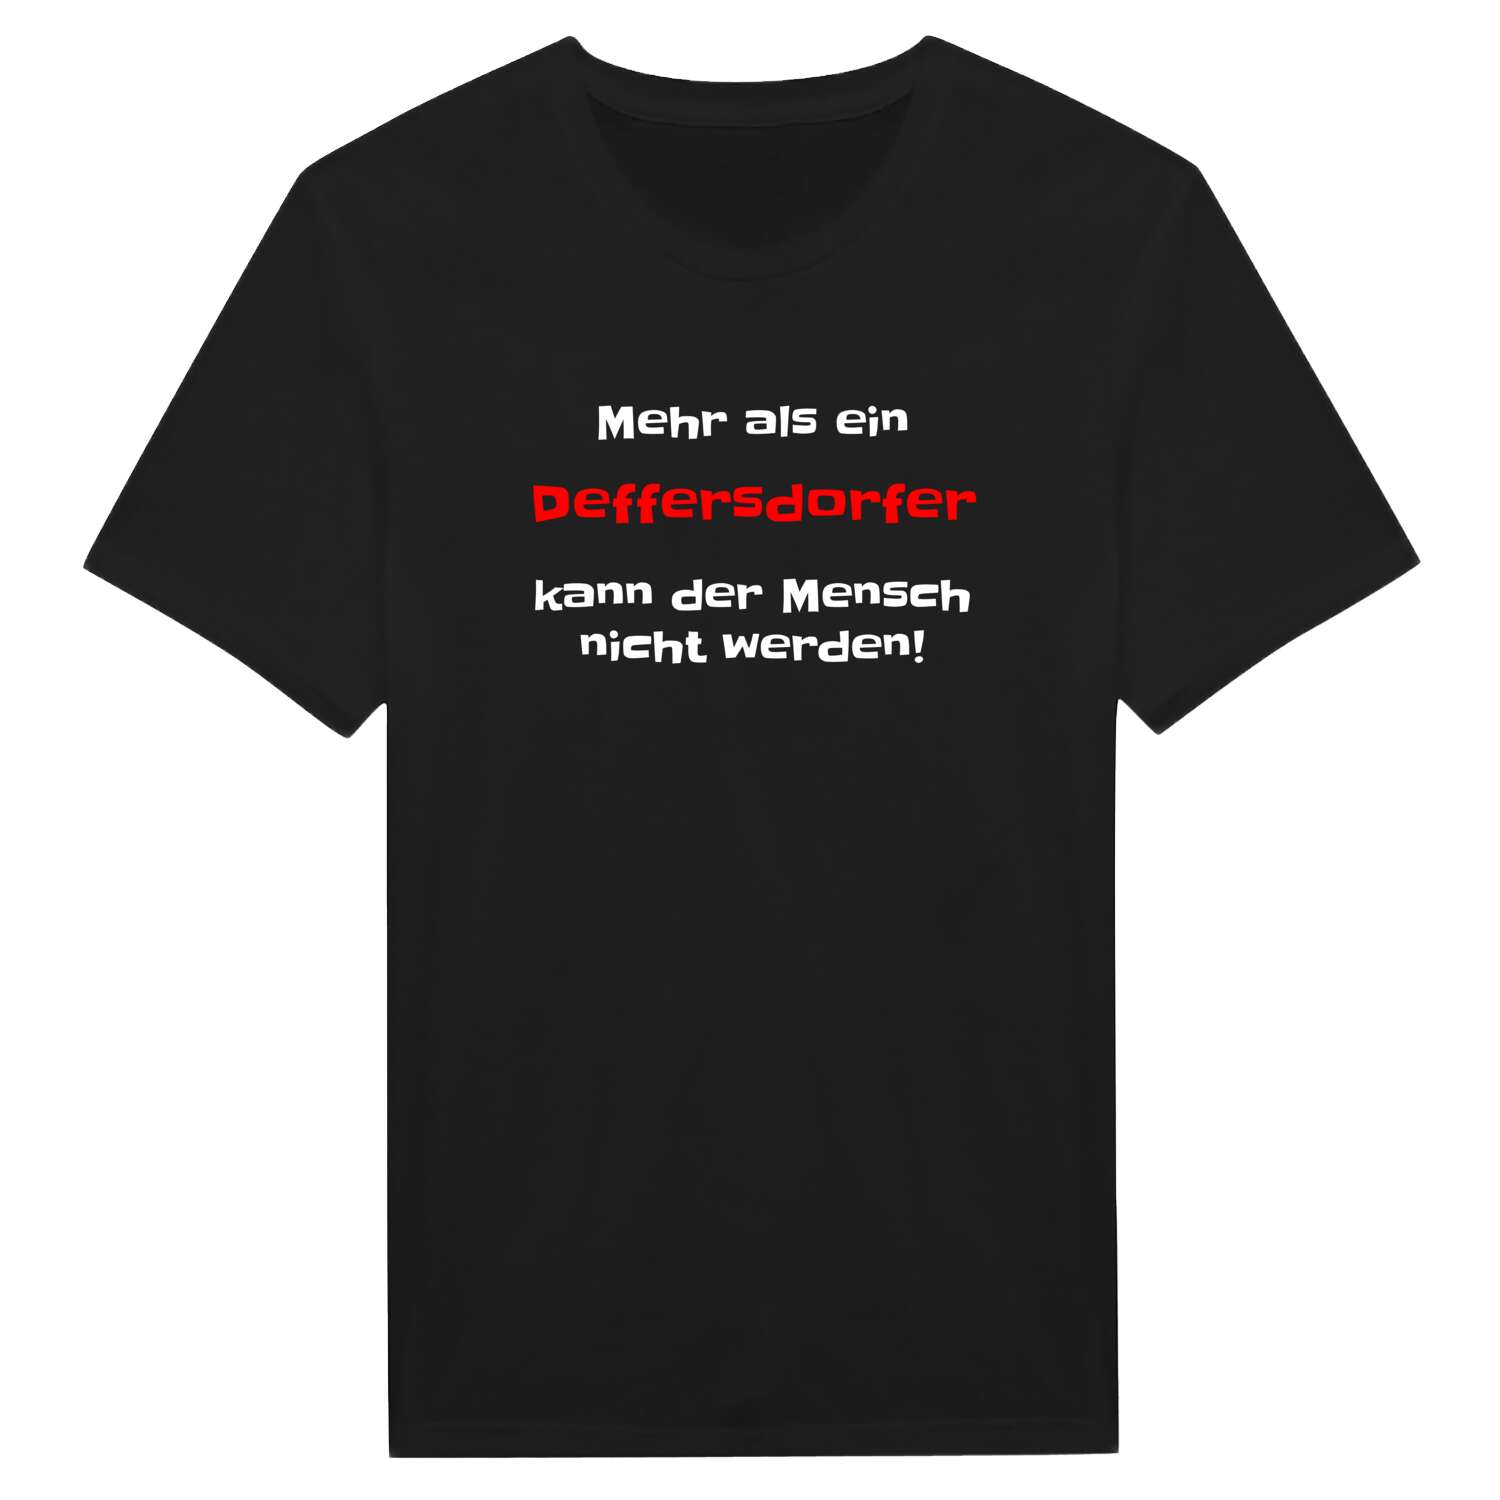 Deffersdorf T-Shirt »Mehr als ein«